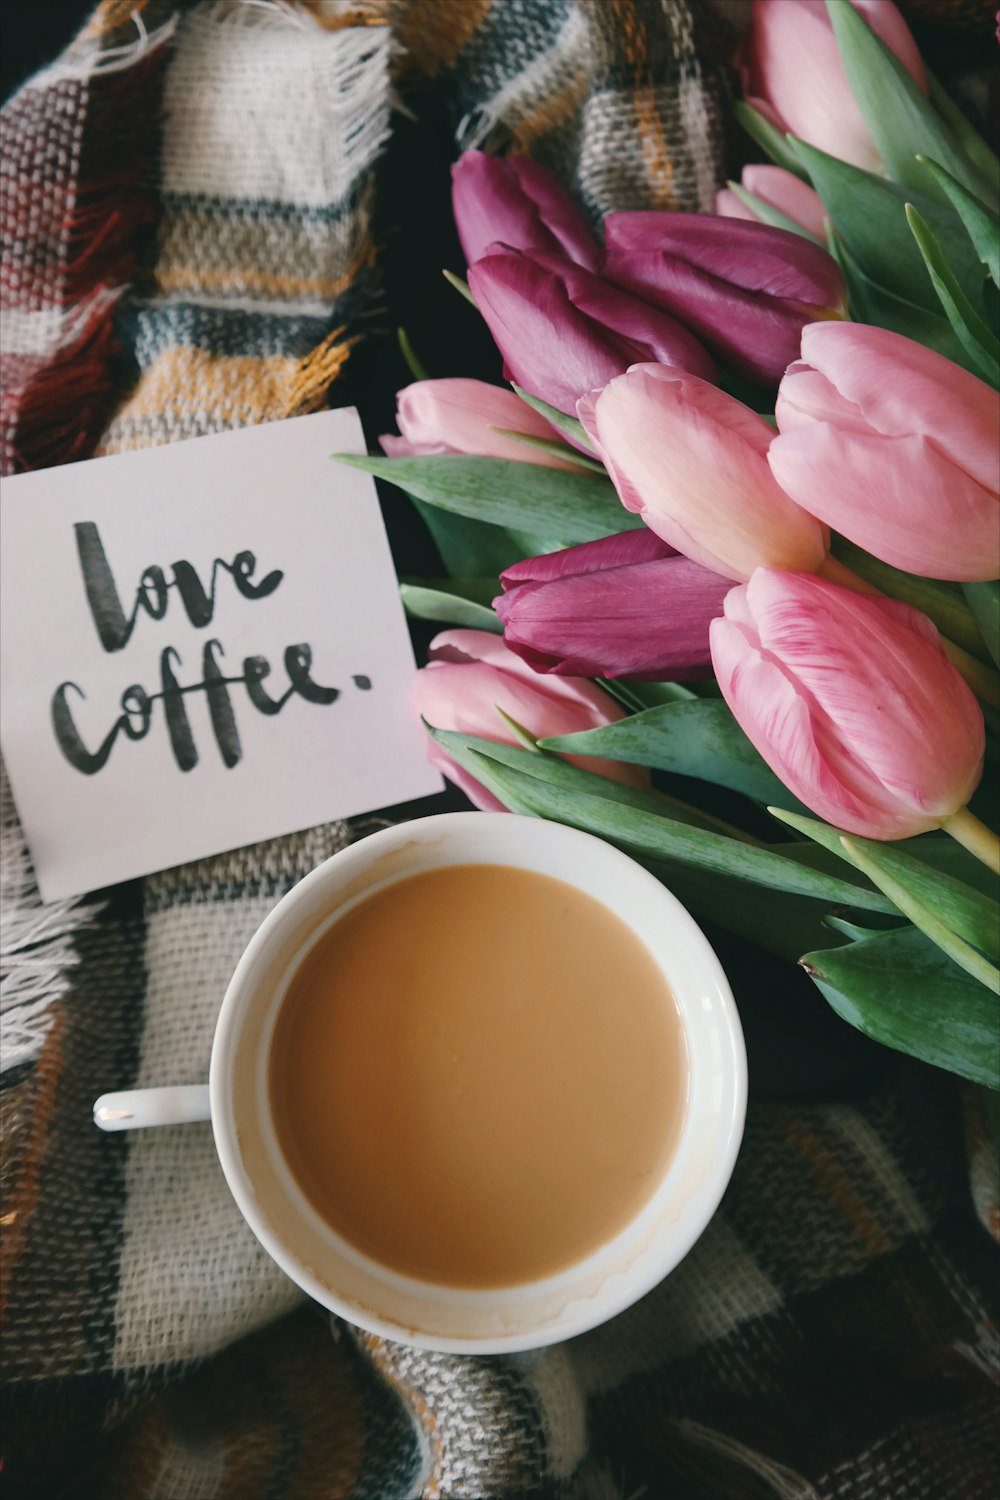 Un "café del amor", nota junto a una taza cremosa de café y flores.